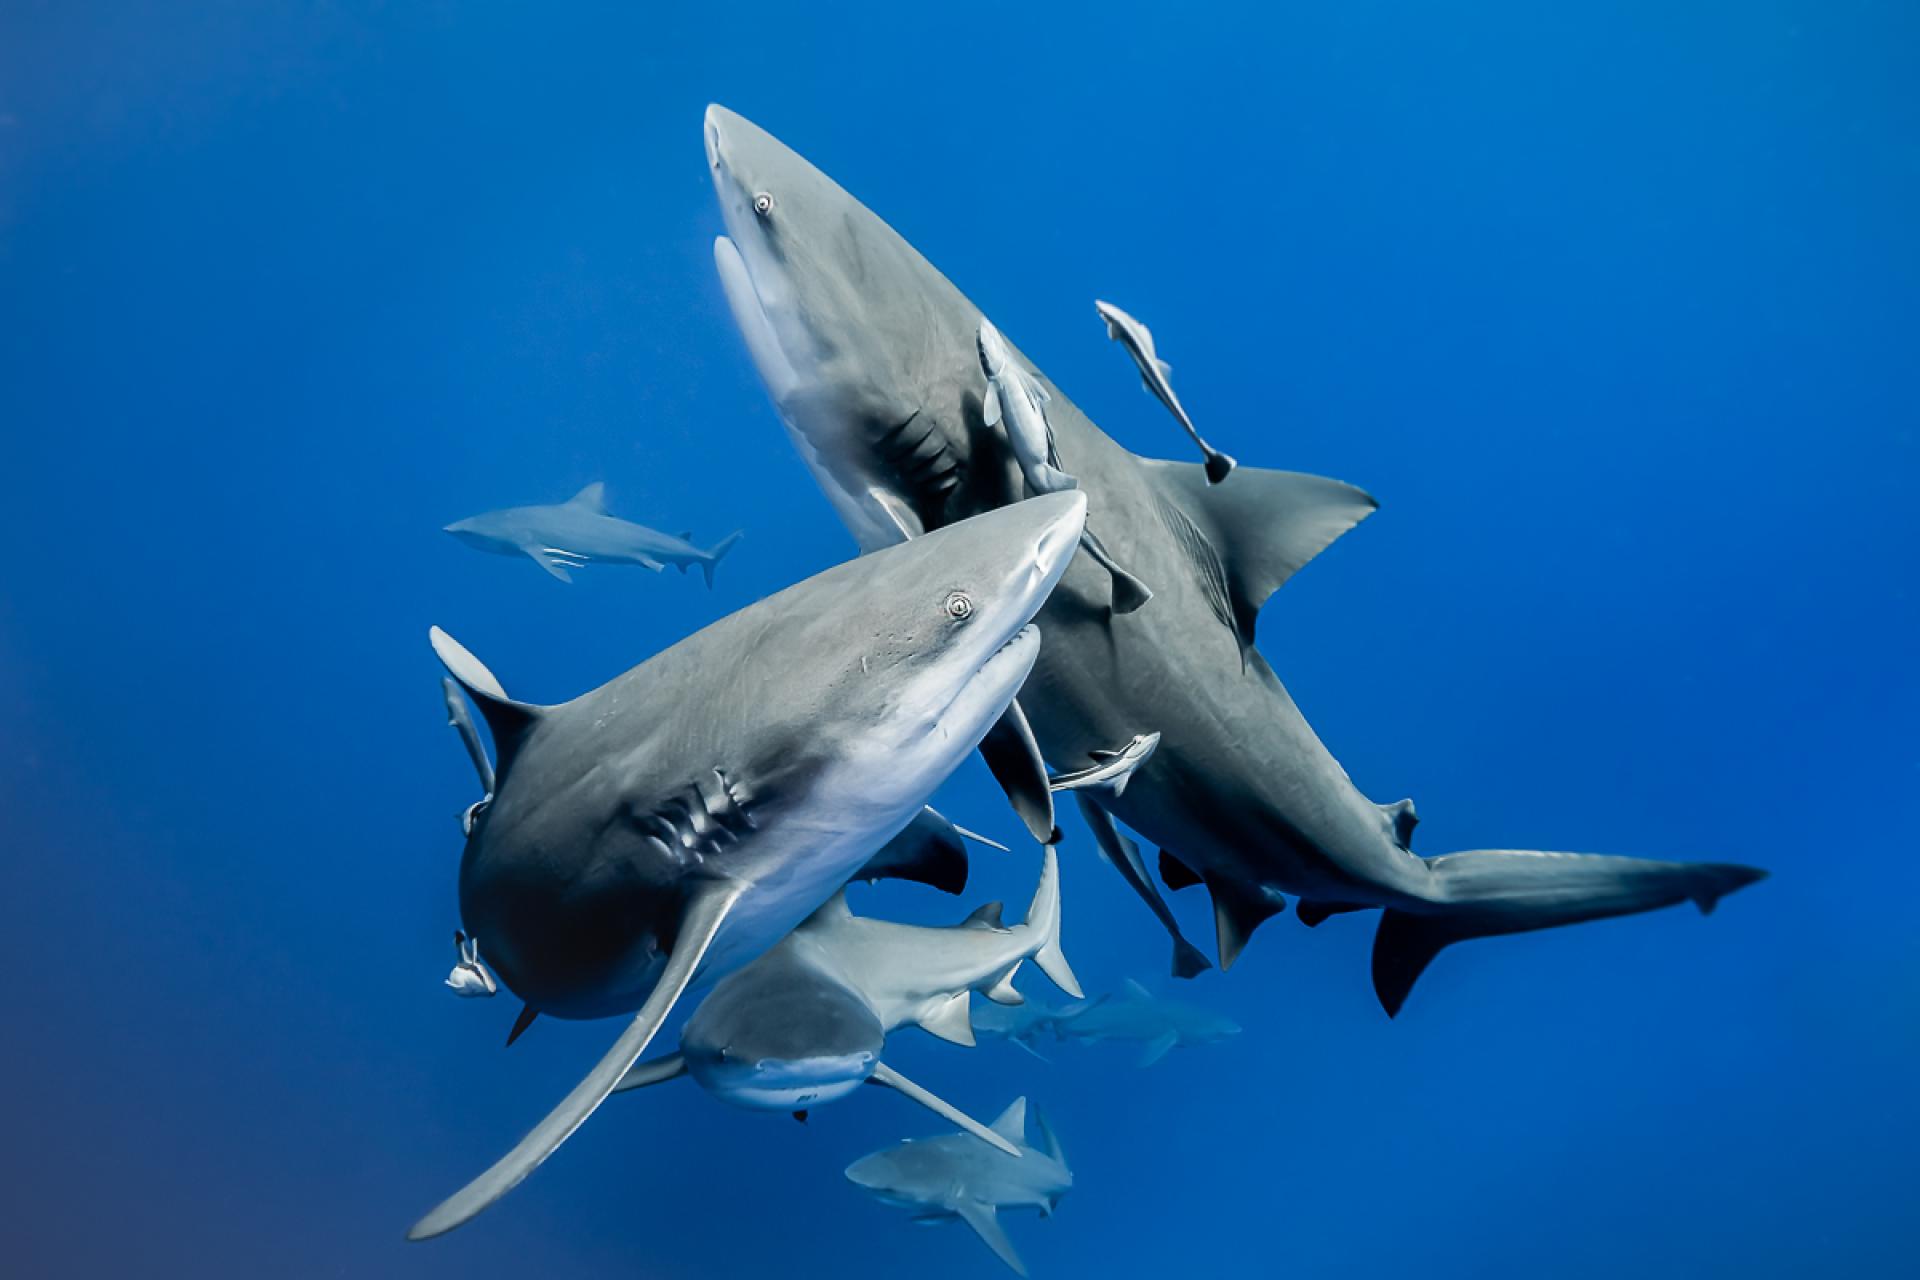 European Photography Awards Winner - Bull sharks synchronised ballet